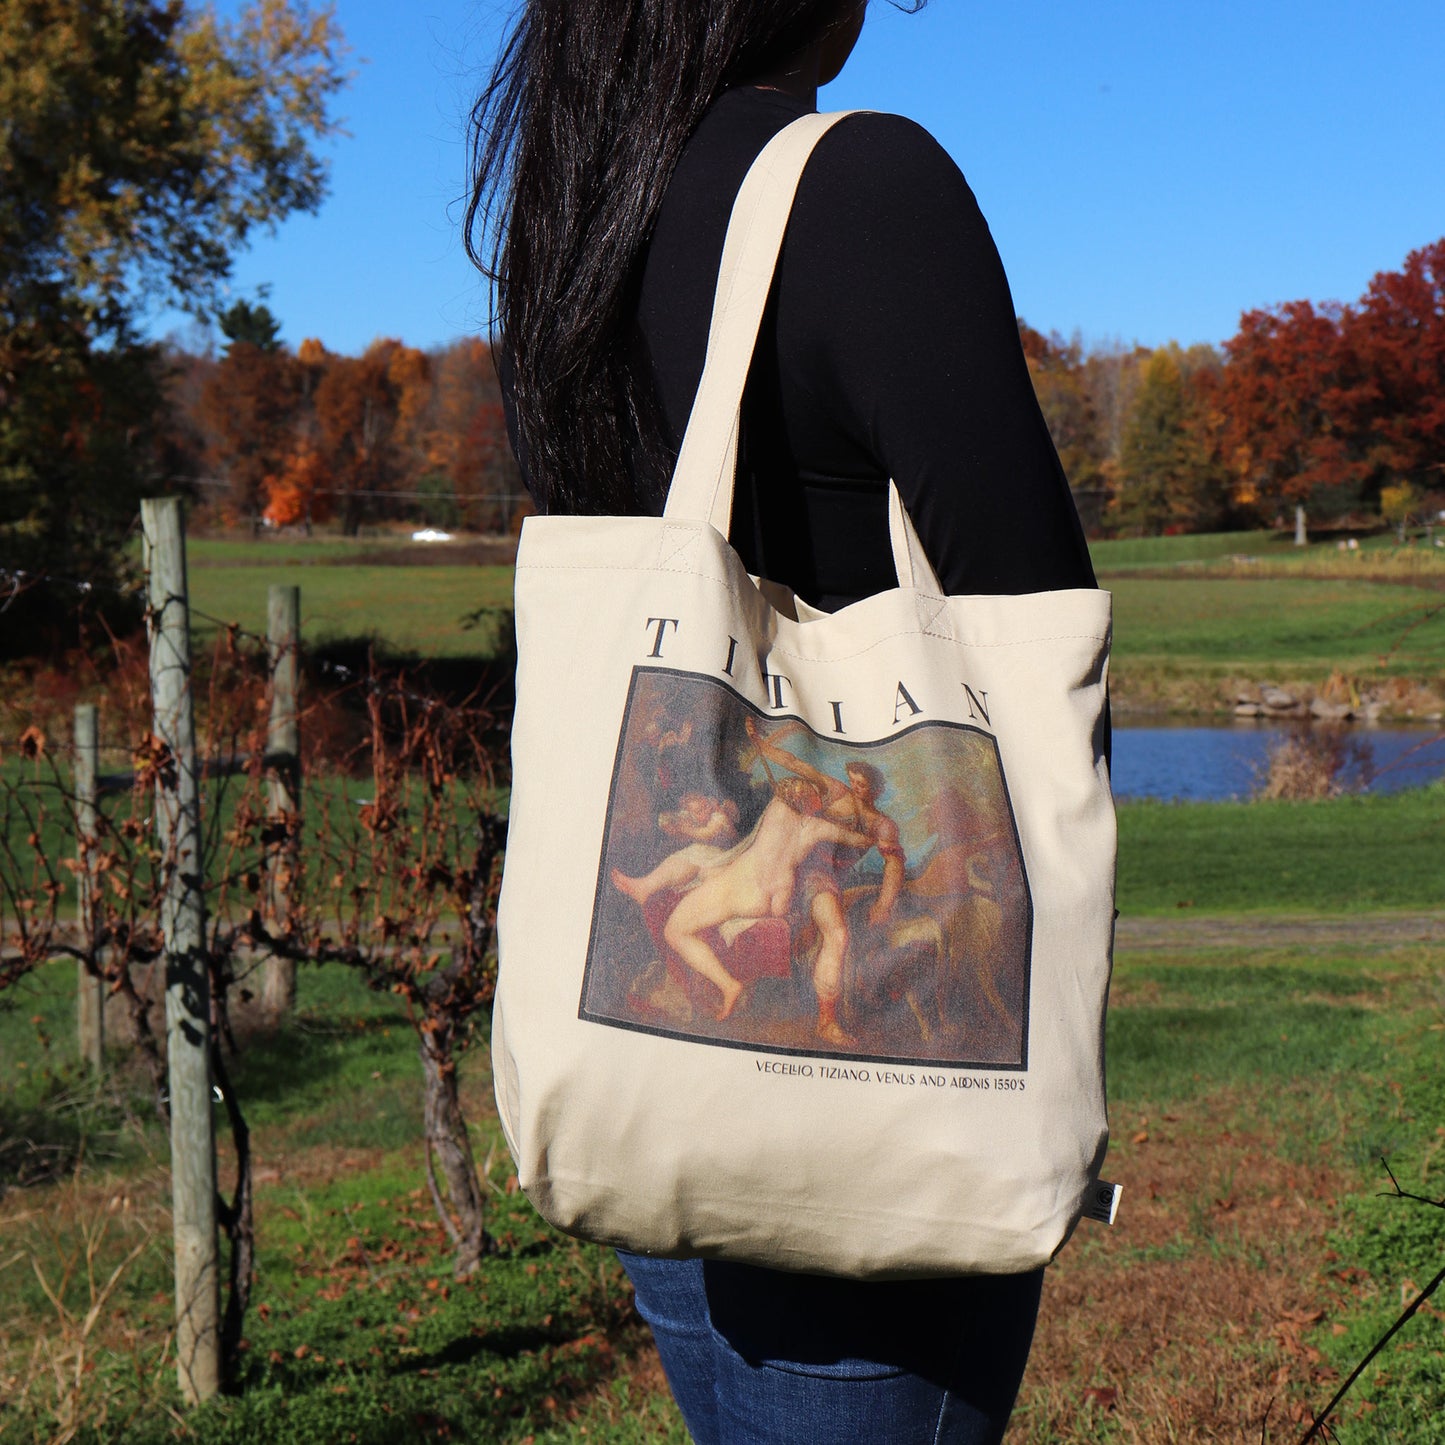 Titian Venus & Adonis Eco Tote Bag